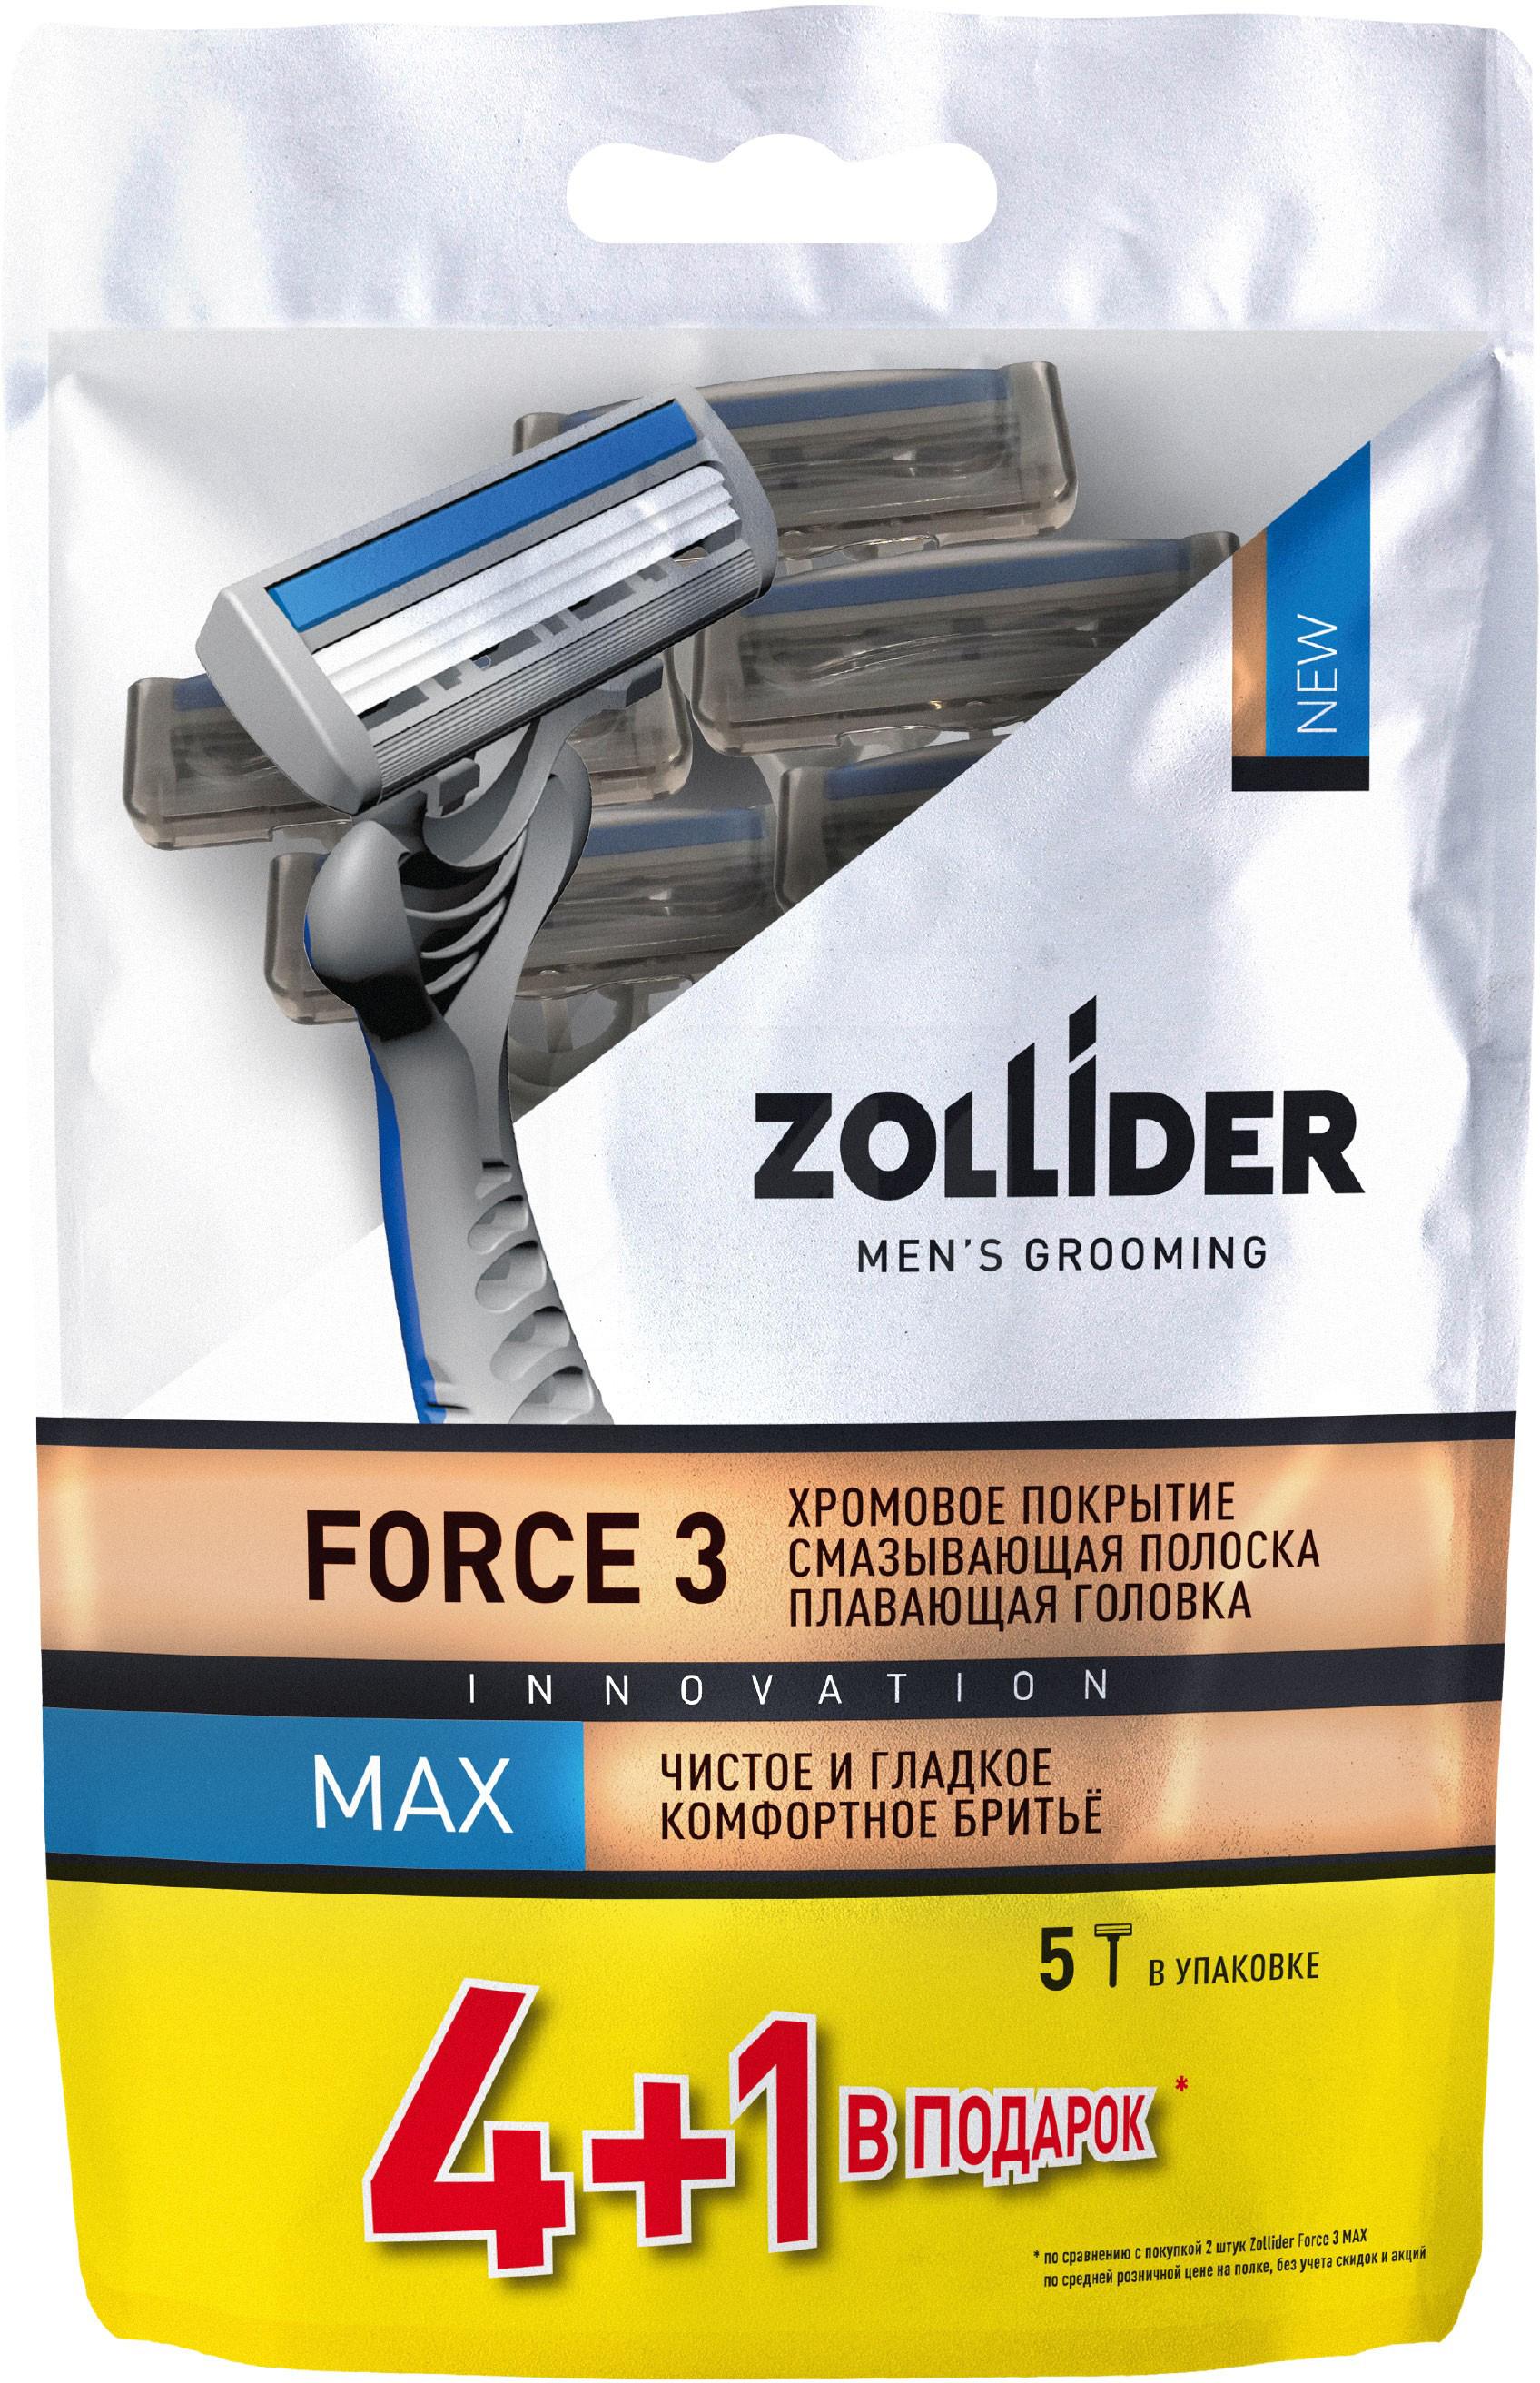 Бритвенные станки мужские Zollider Force 3 Max одноразовые с тройными лезвиями 4 + 1 шт бритвенные станки пр ст с тройным лезвием мужские 4 шт